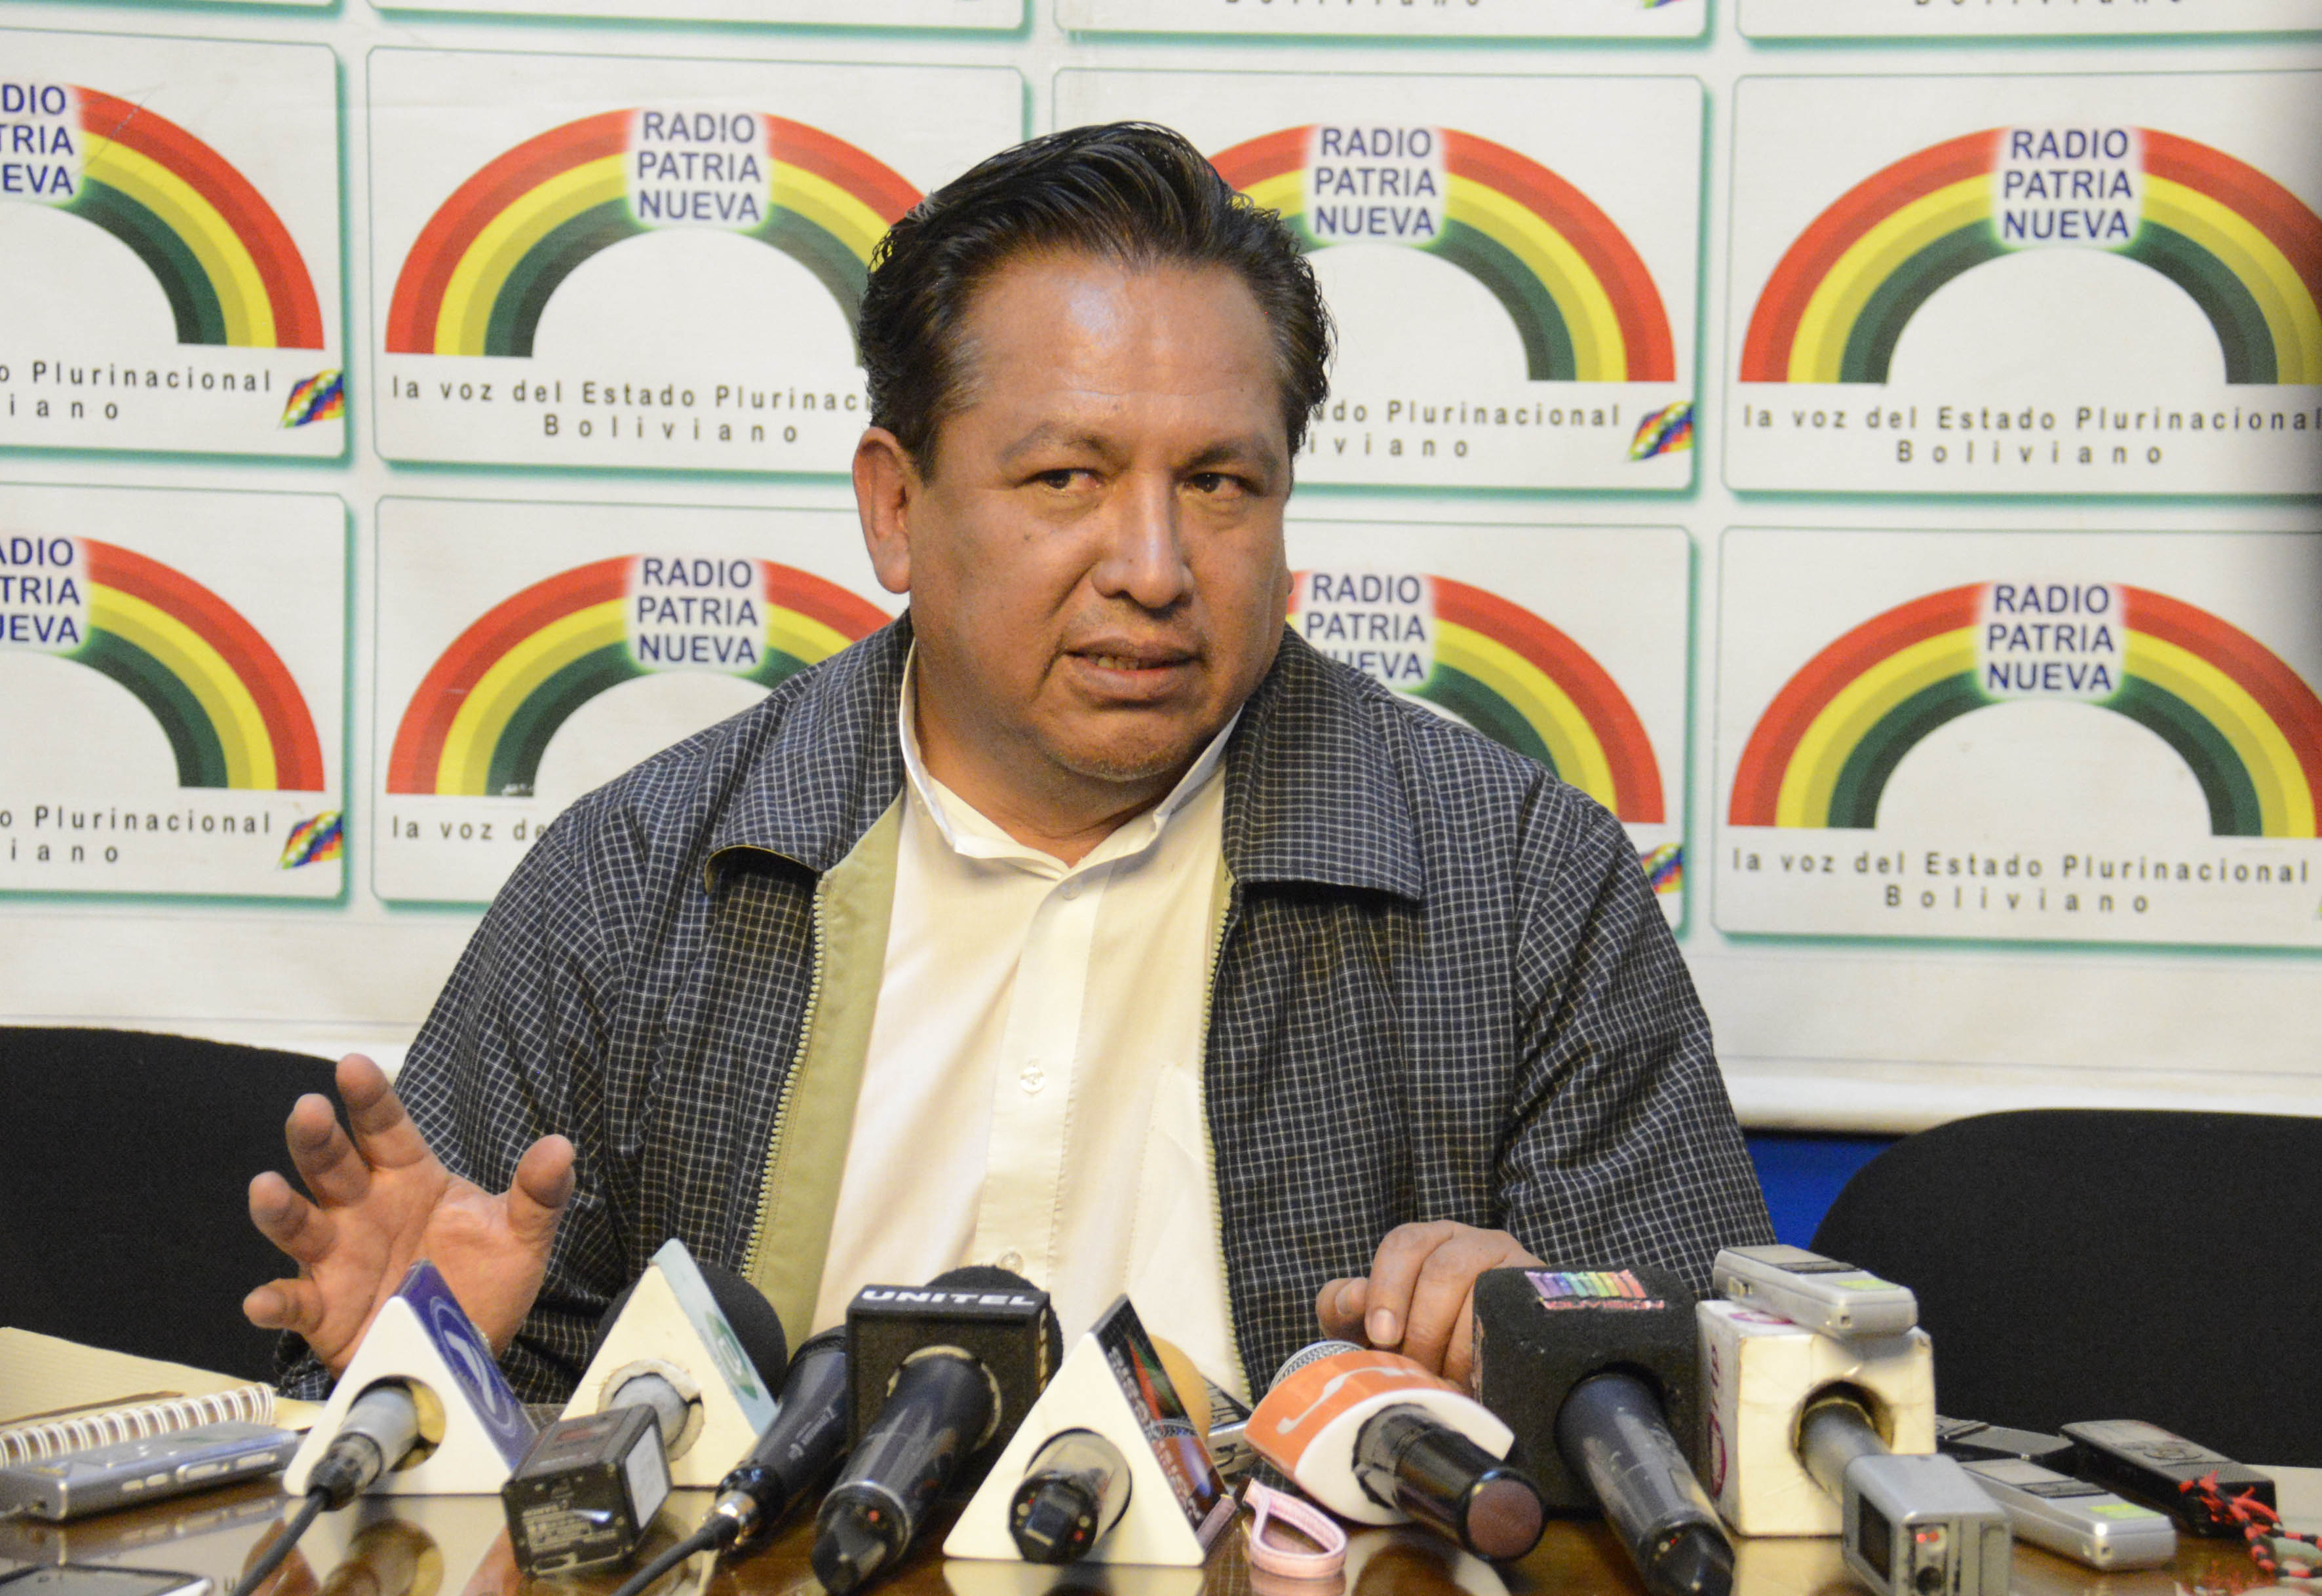 Martínez criticó que Brennan solicitara una reunión con Evo Morales, luego de expresar su apoyo hacia el exmandatario Mesa.